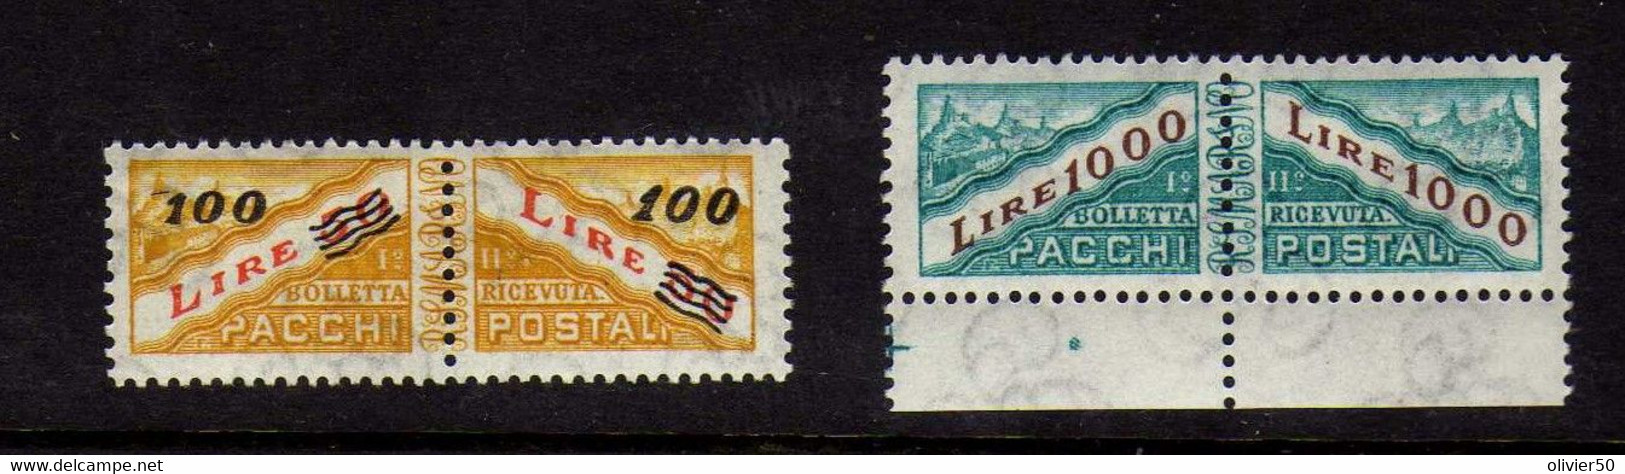 Saint-Marin -   (1965-72) - Colis-Postaux - Neufs** - MNH - Parcel Post Stamps